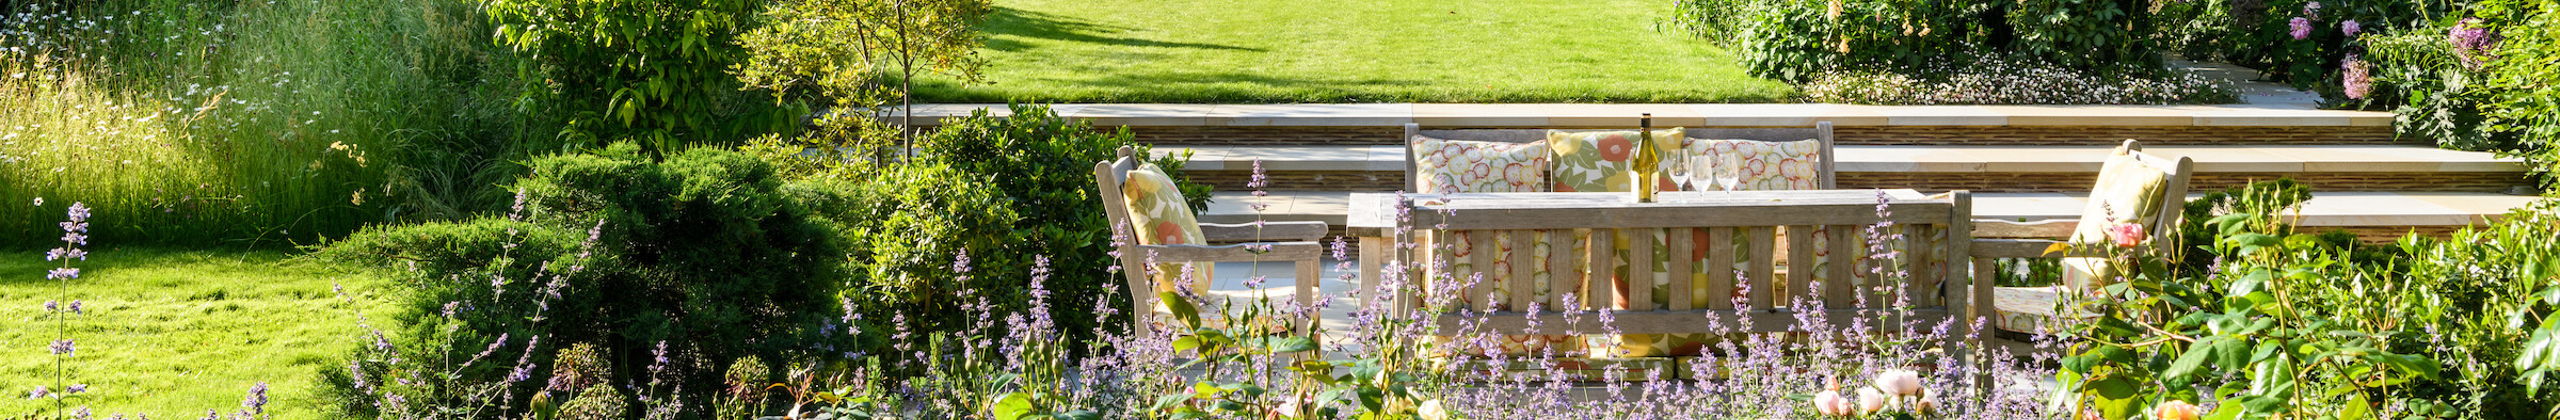 Cottage garden header